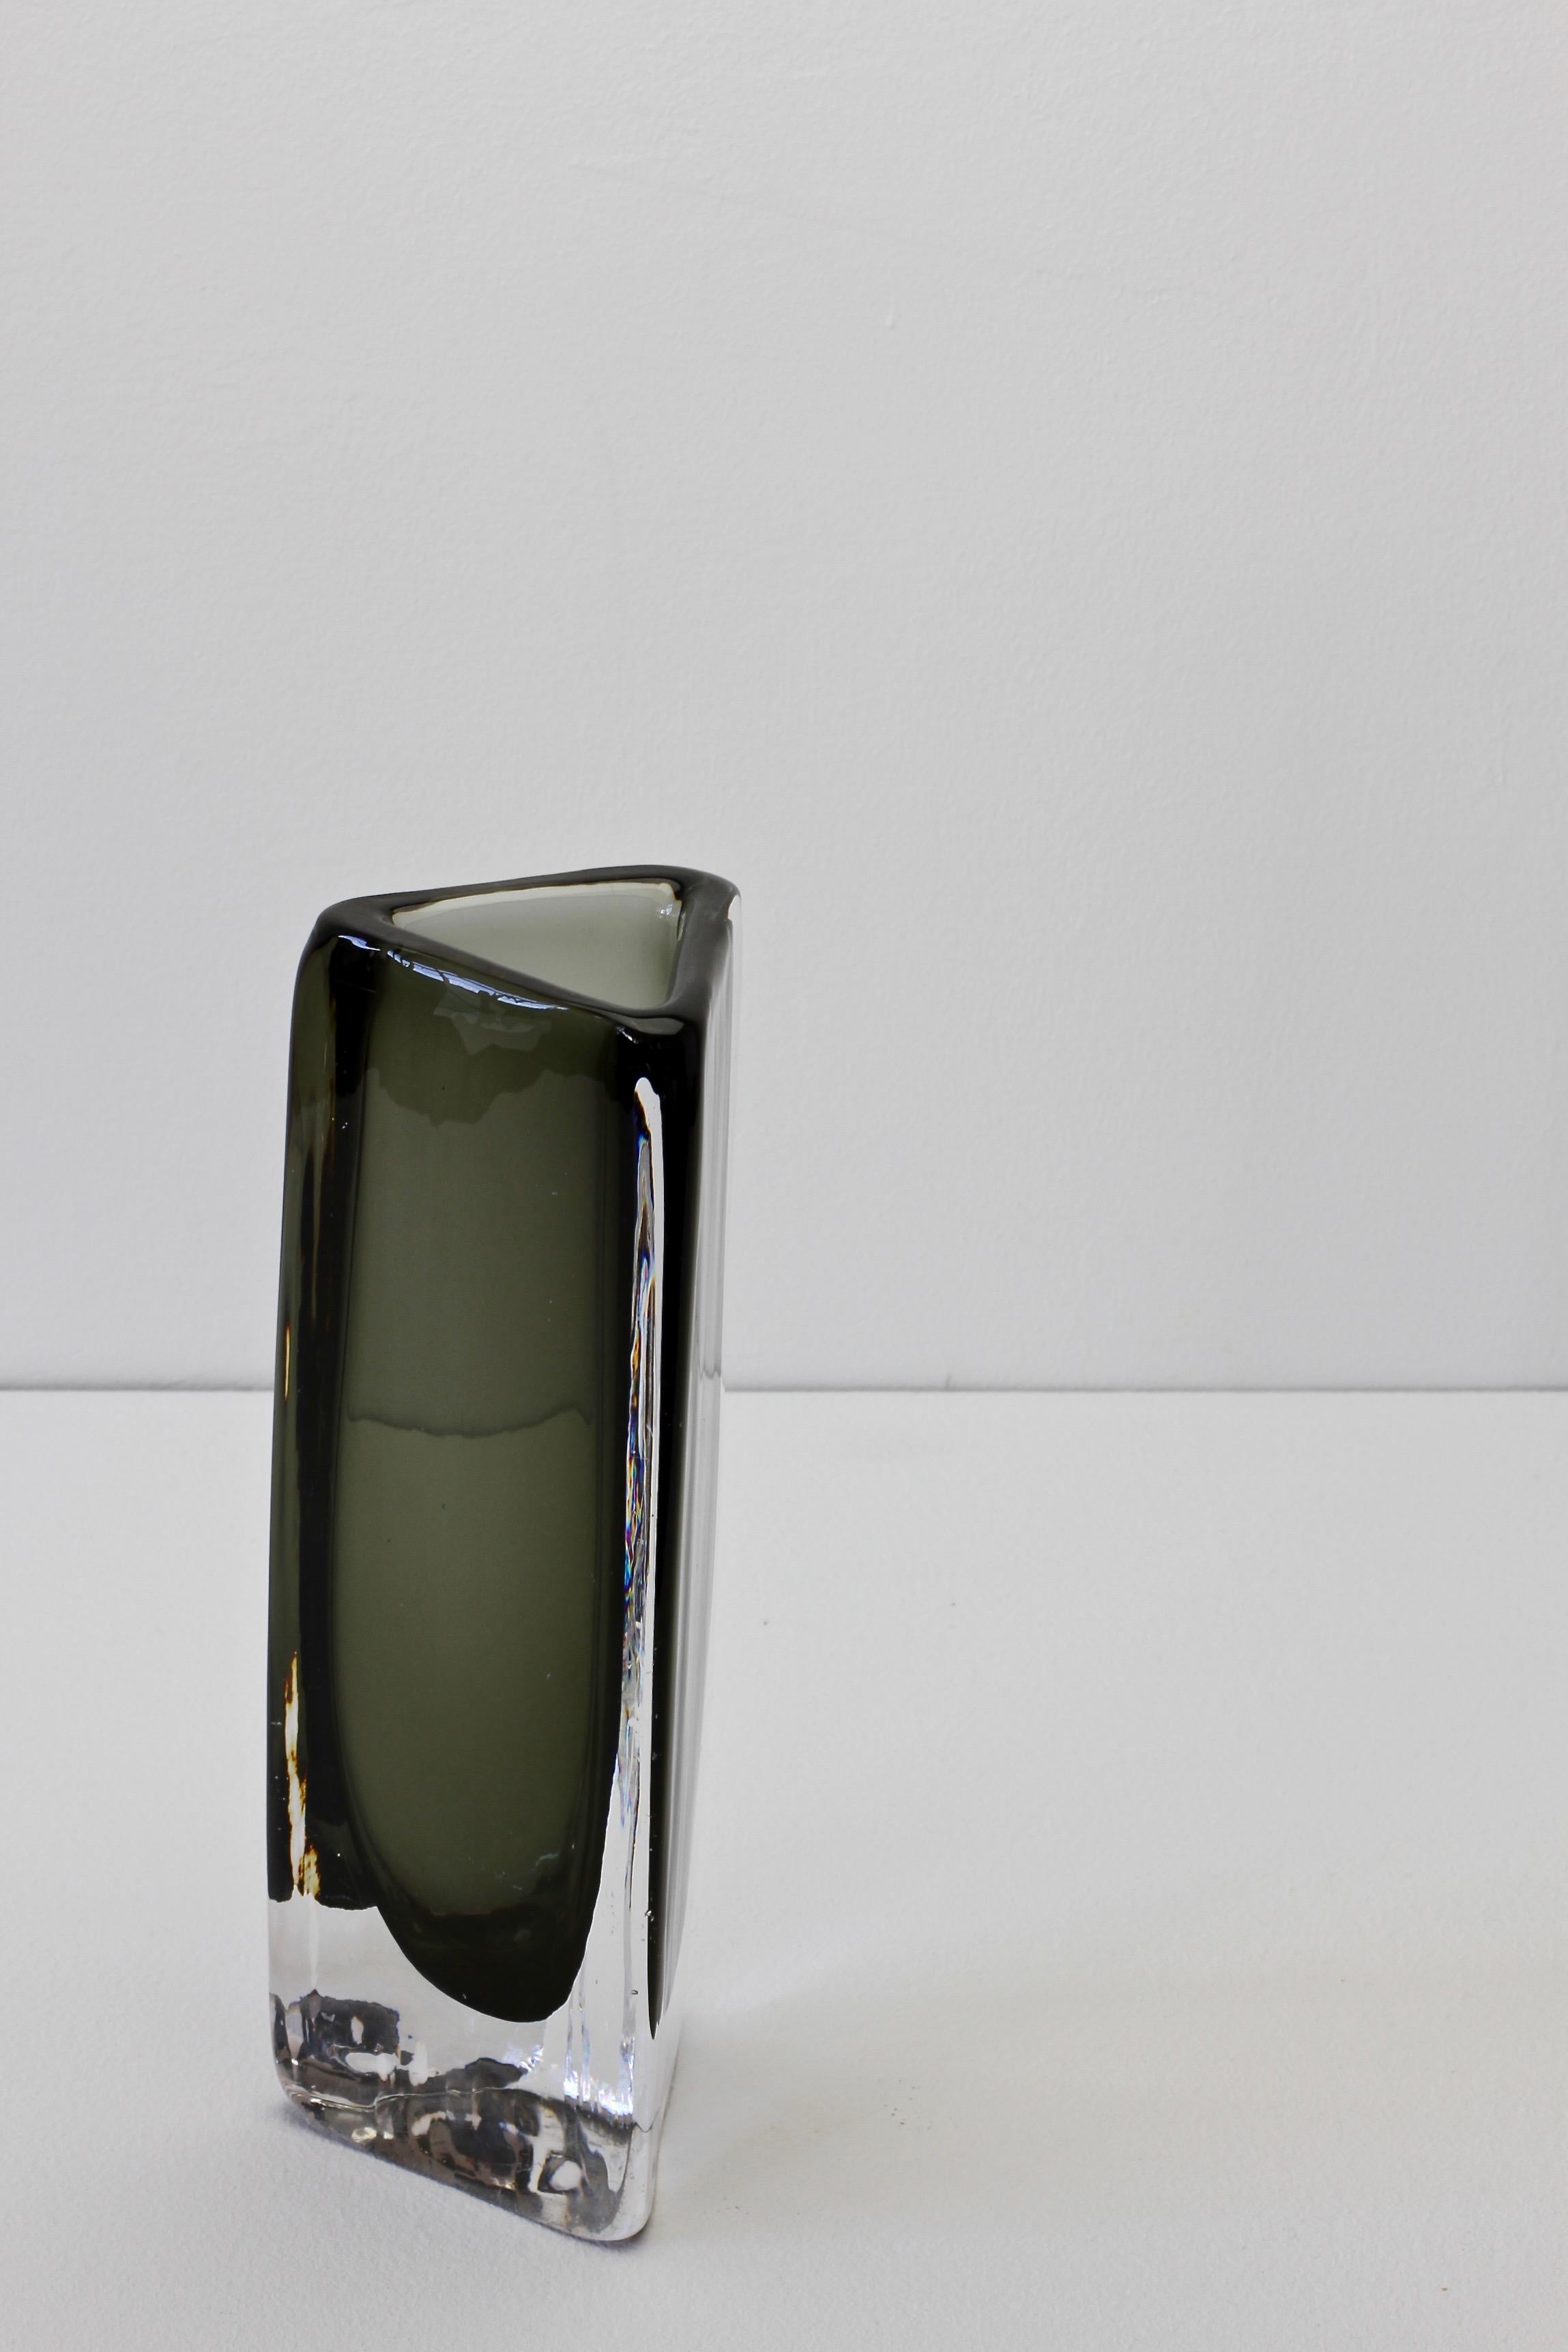 Tall 1950s Dark Toned Sommerso Vase Signed Nils Landberg for Orrefors Glass For Sale 4